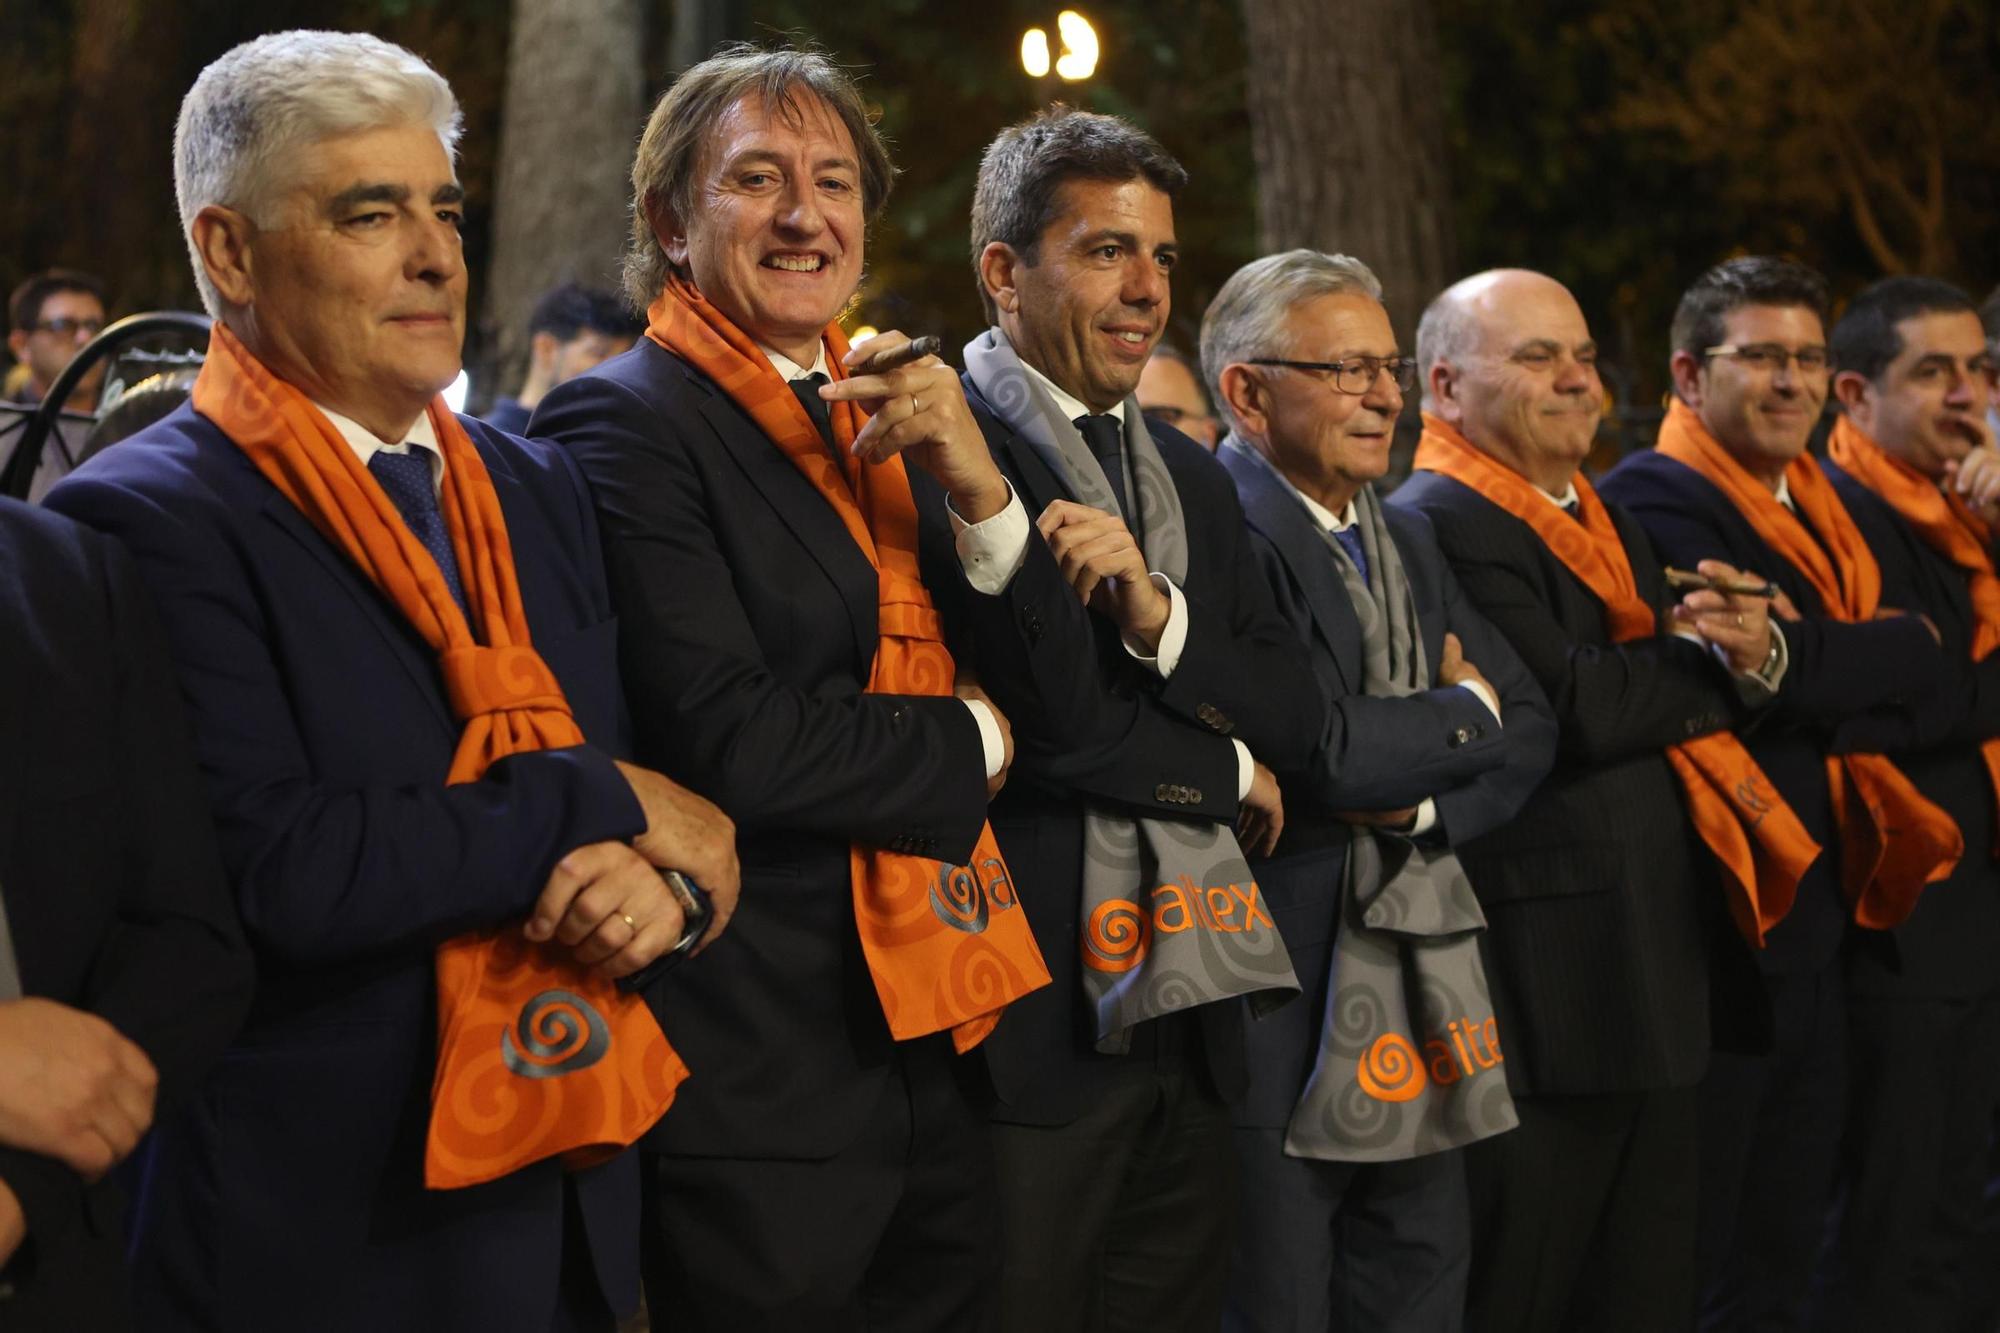 El President de la Generalitat, Carlos Mazón, participa en la "Entradeta" de la Filà Llana